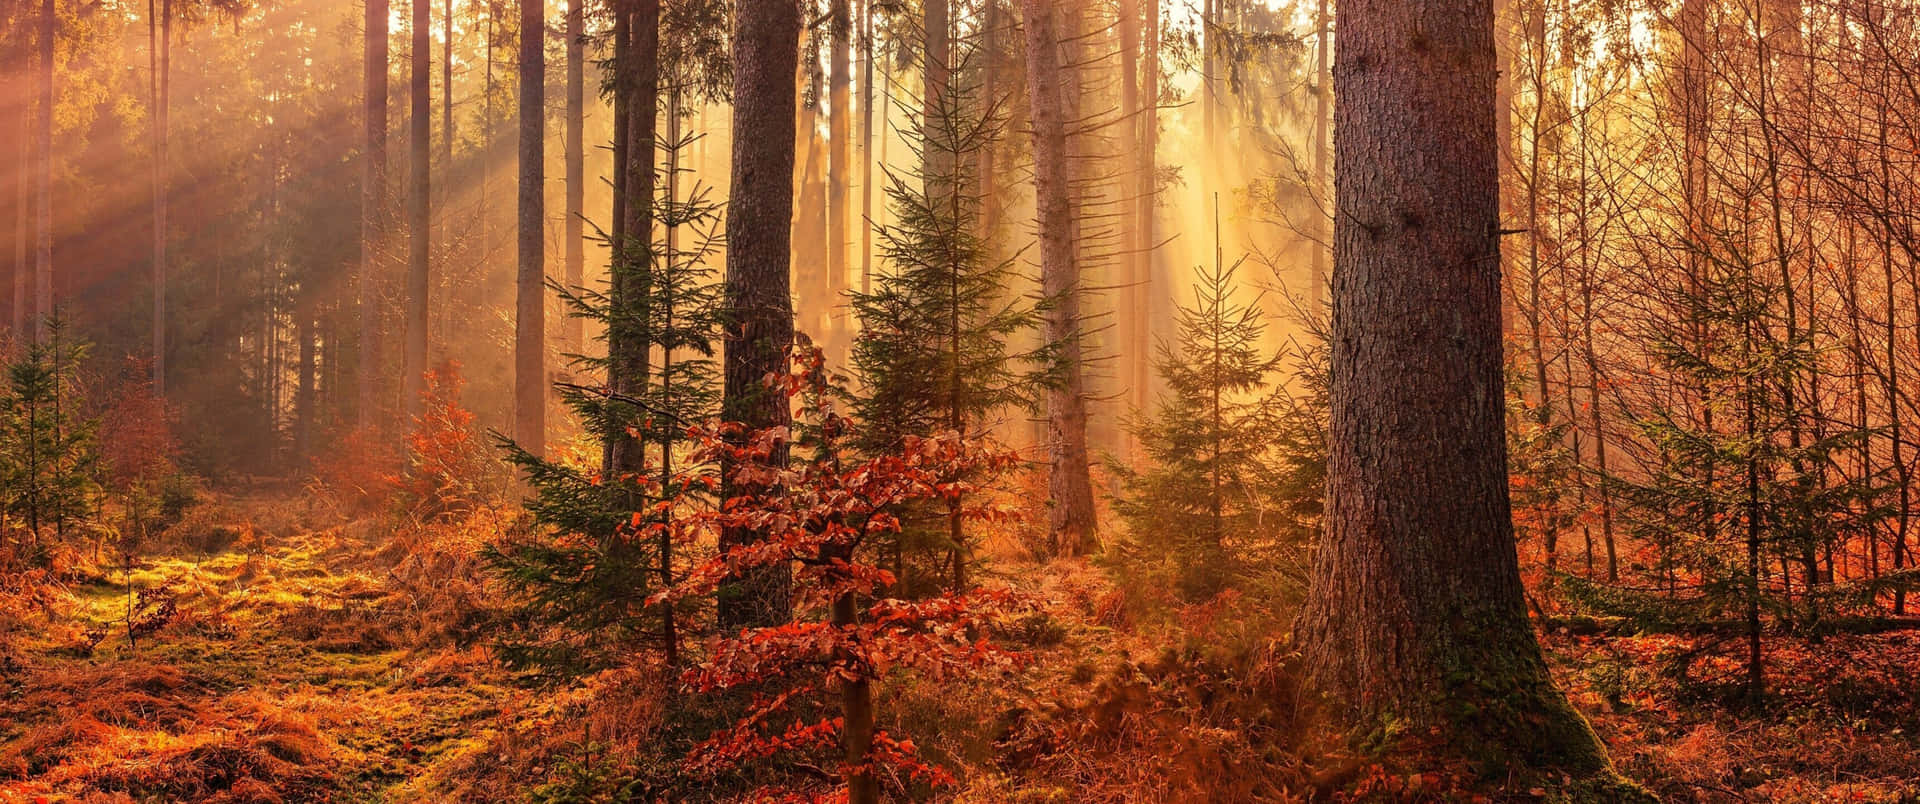 Et skovområde med sollys der skinner igennem træerne Wallpaper